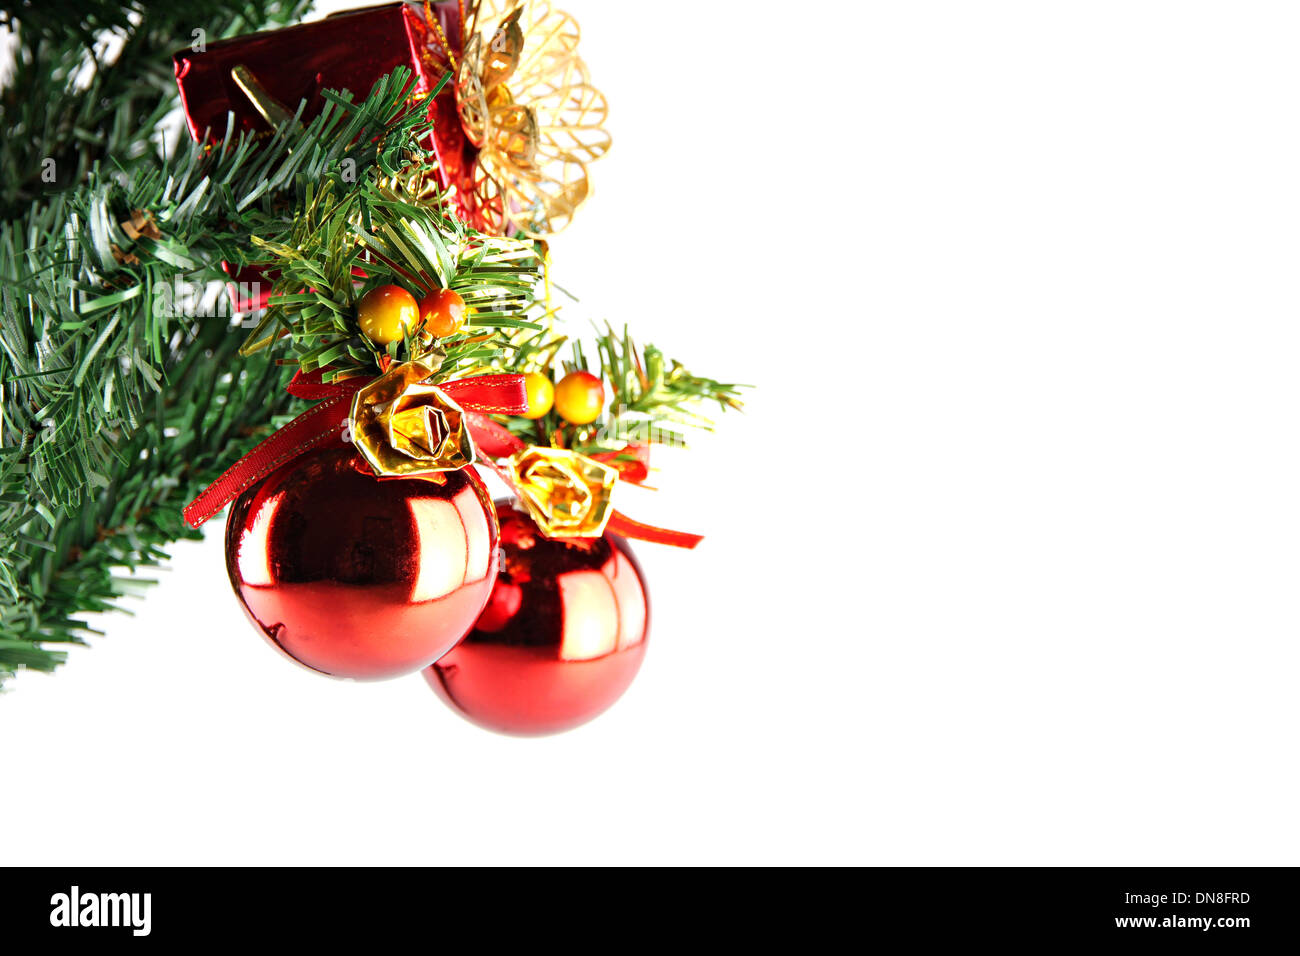 Deux balle rouge accroché sur une branche d'arbre de Noël Banque D'Images